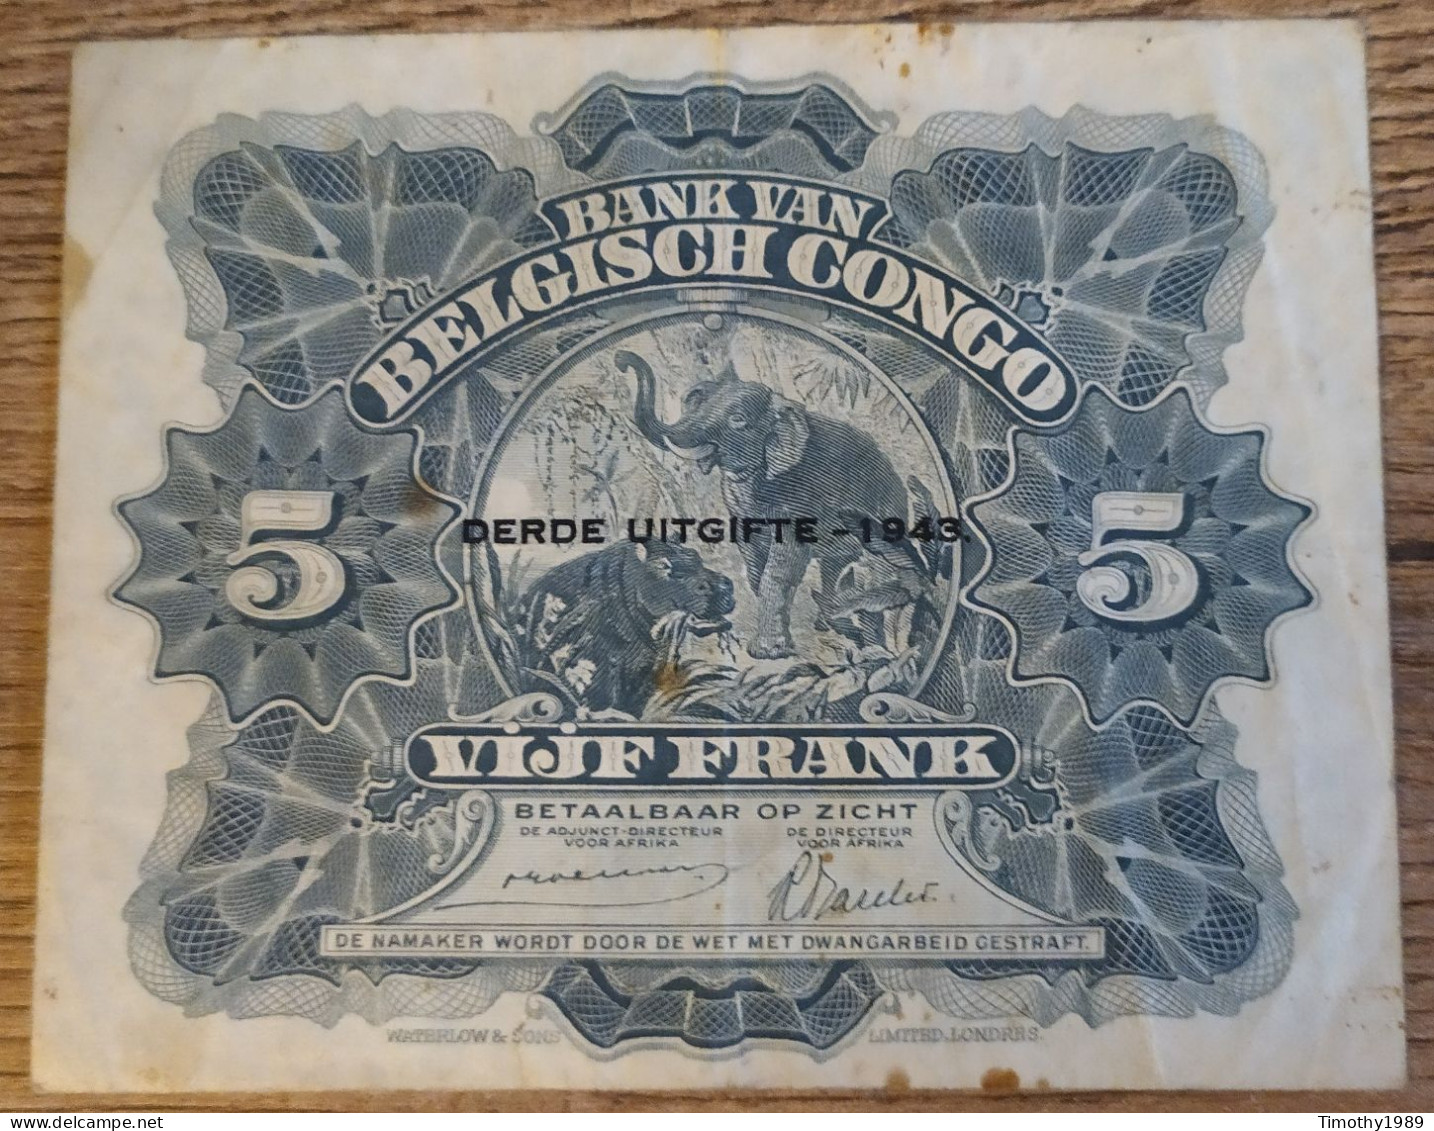 P#13A - 5 Francs Belgian Congo 1943 - Derde Uitgifte/troisième Emission (VF) - Belgian Congo Bank